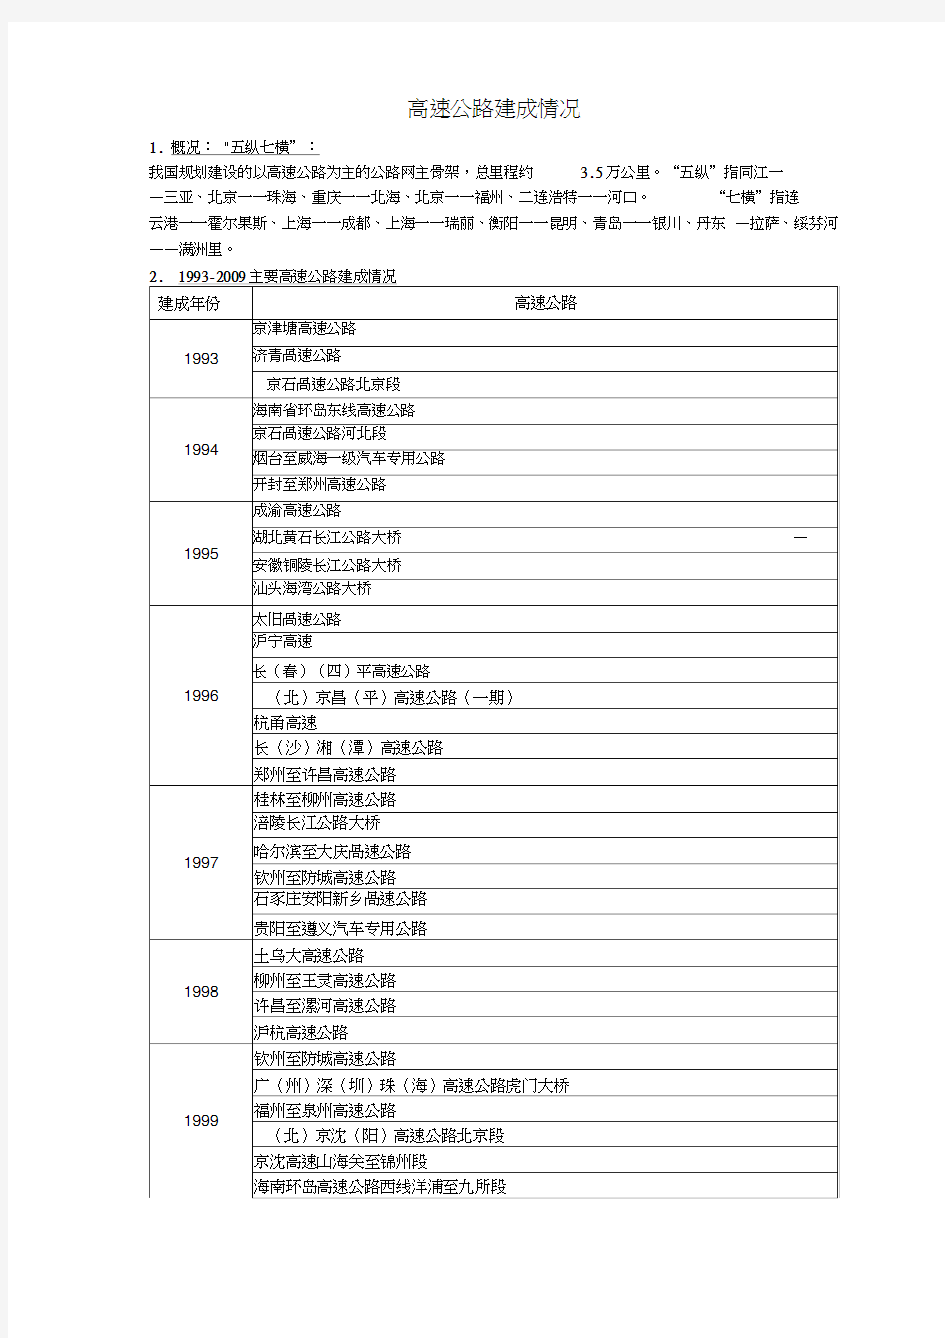 中国高速公路建设_时间表